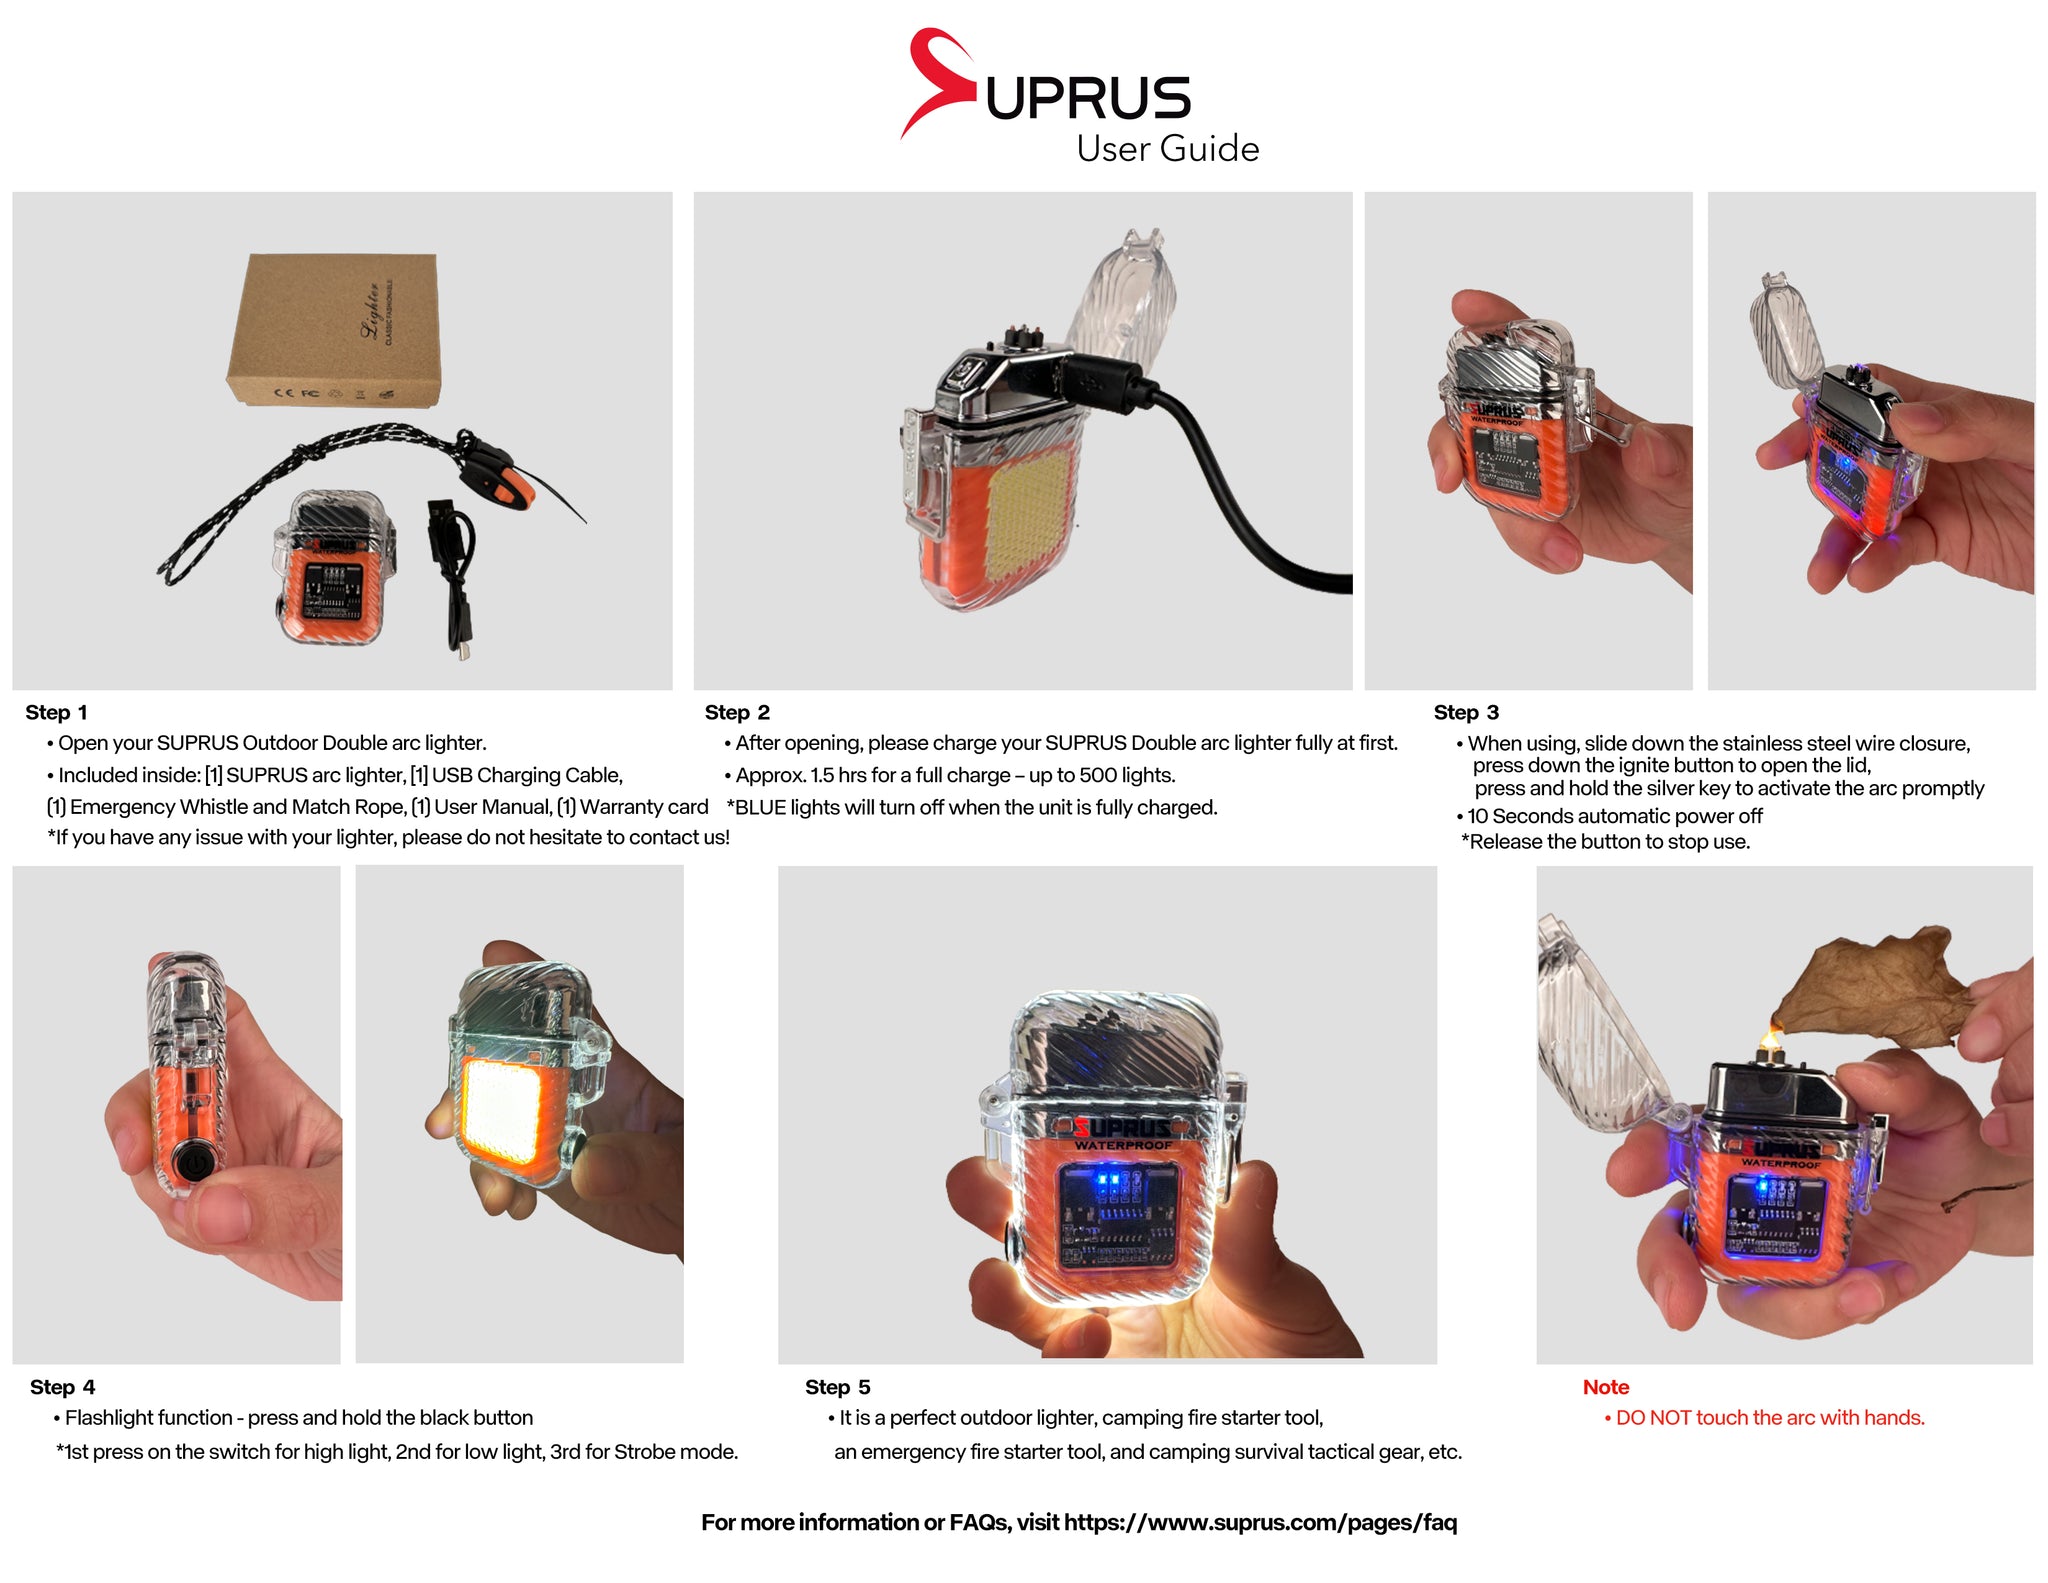 SUPRUS outerdoor lighter manuals